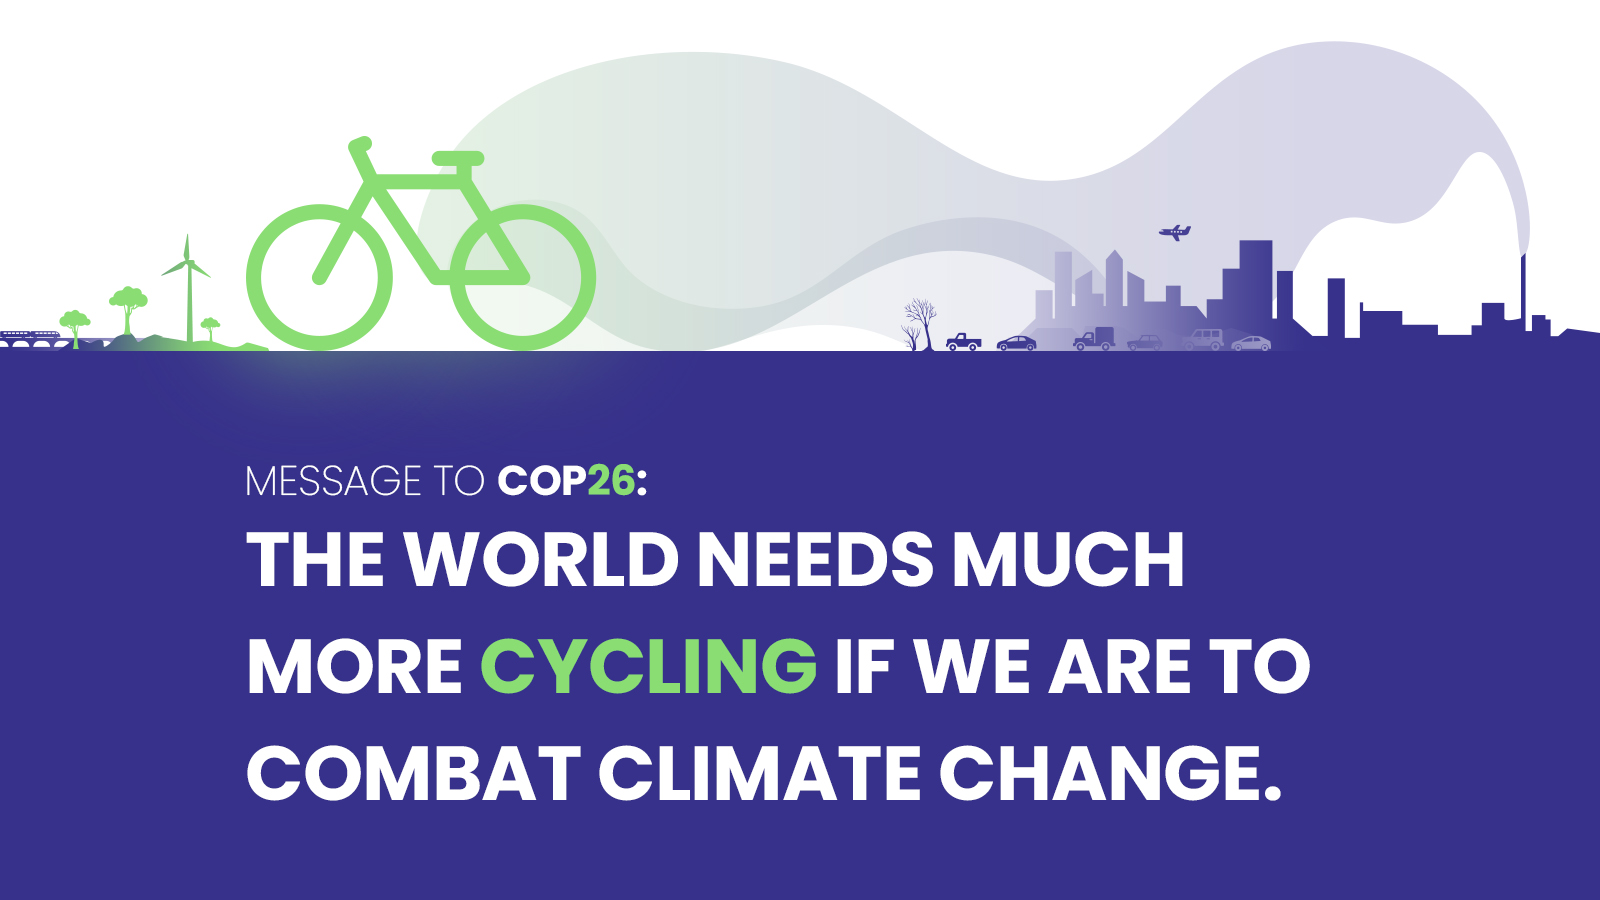 A világ vezető kerékpáros szervezetei a kerékpározás ösztönzését kérik a klímakonferencia döntéshozóitól